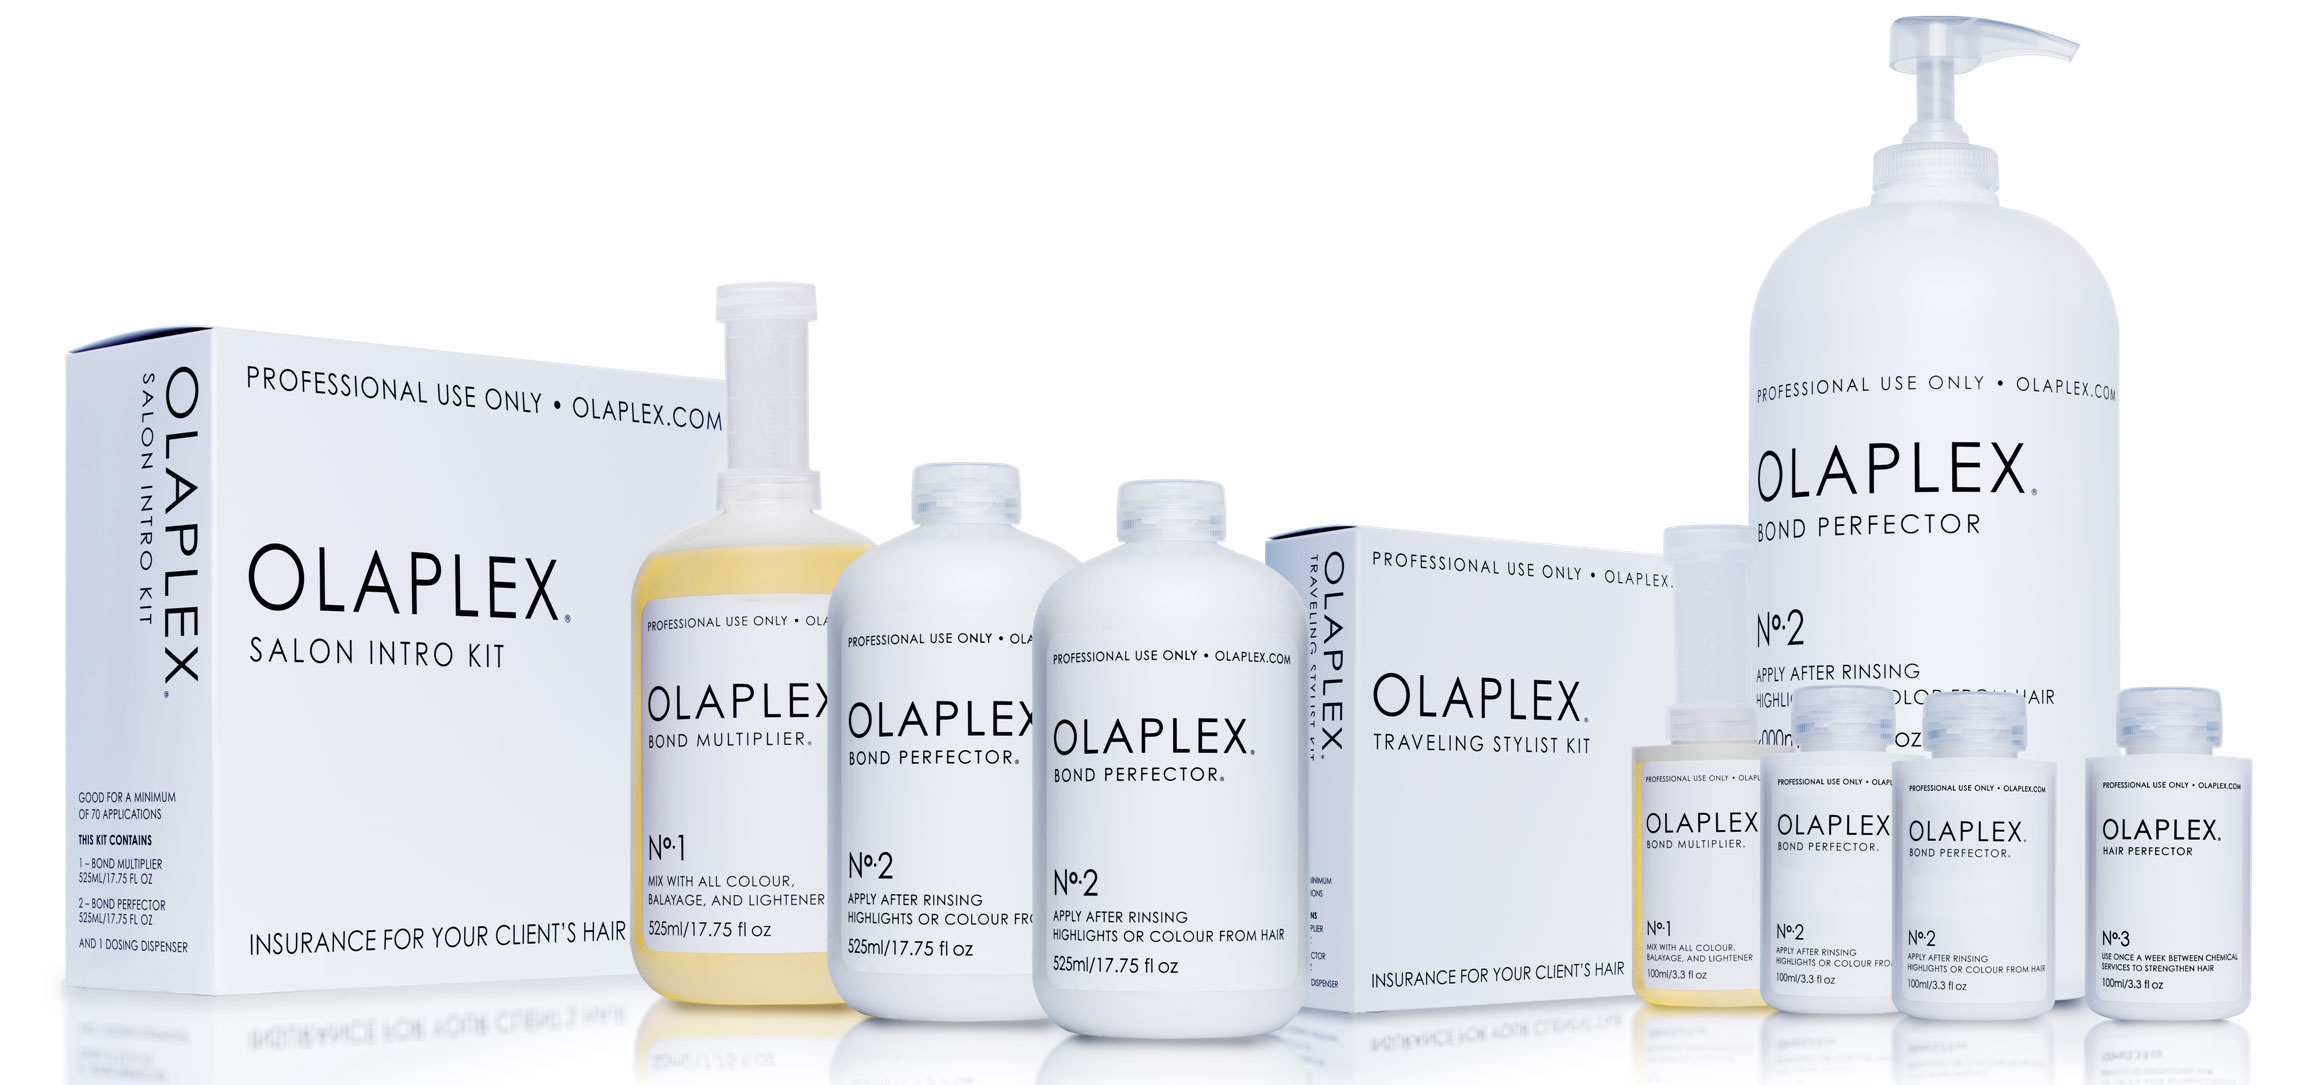 Olaplex-Banner_1